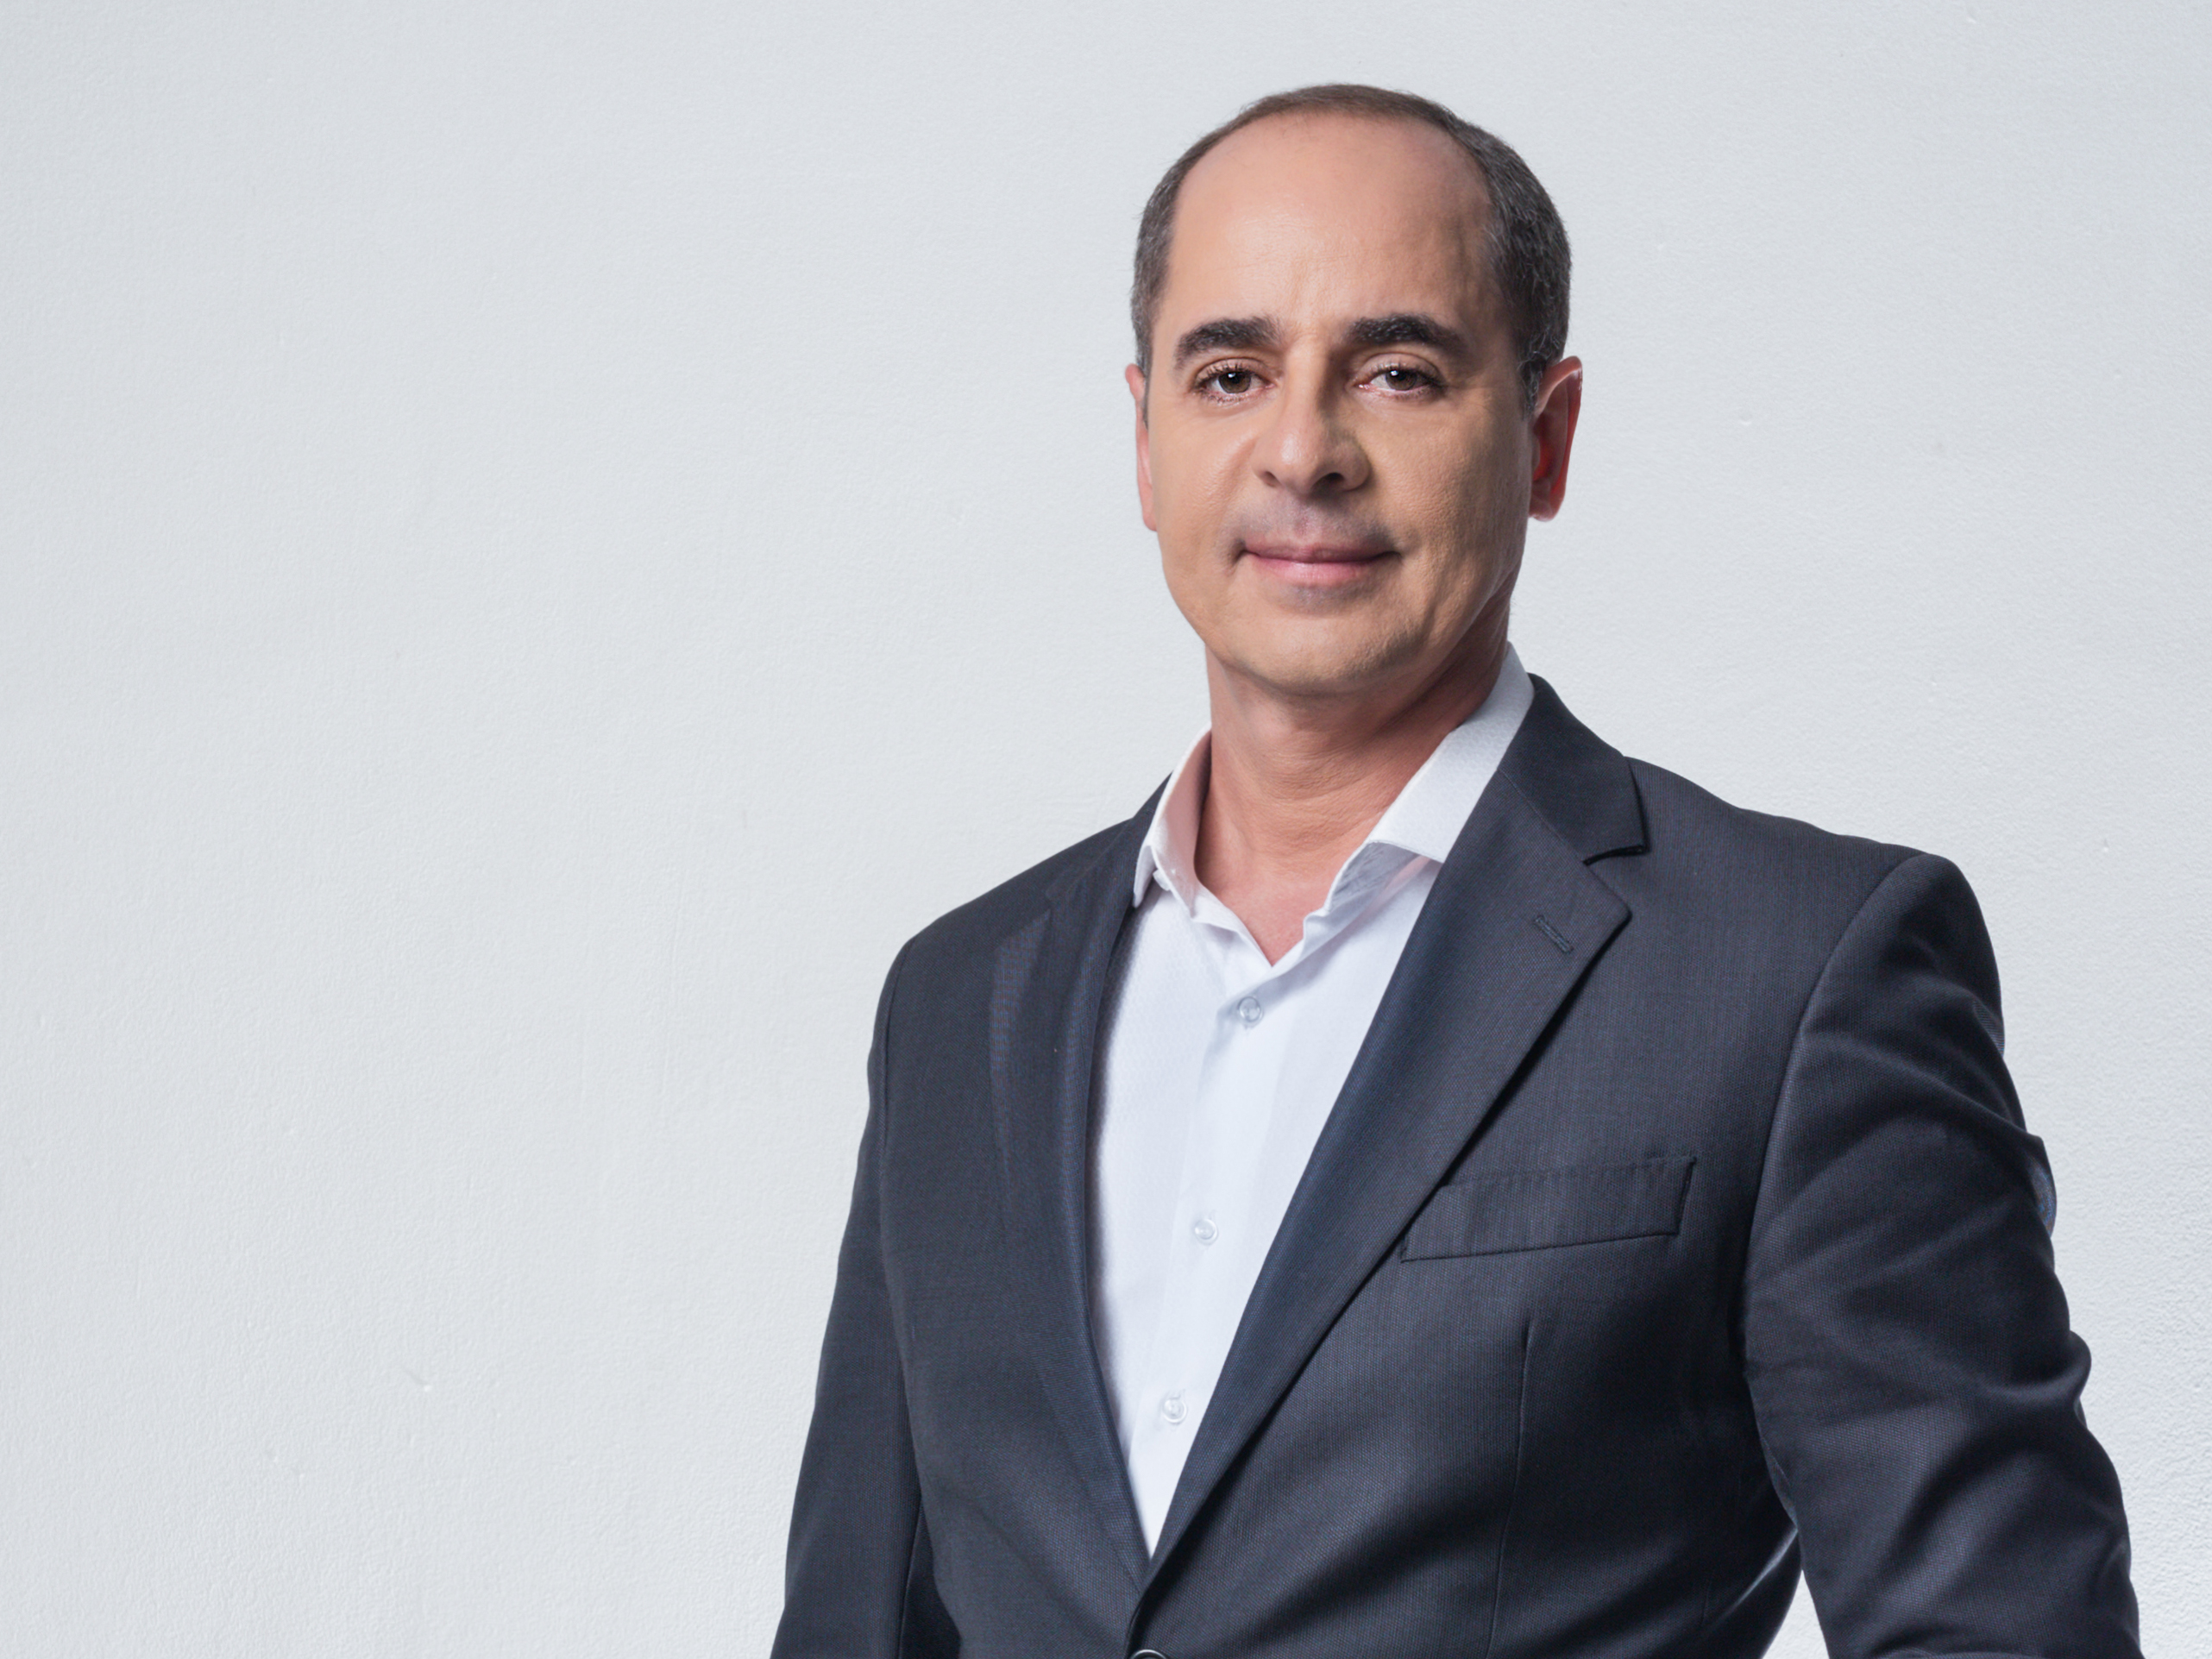 Paulo Vieira dá dicas imprescindíveis a empreendedores que buscam sucesso